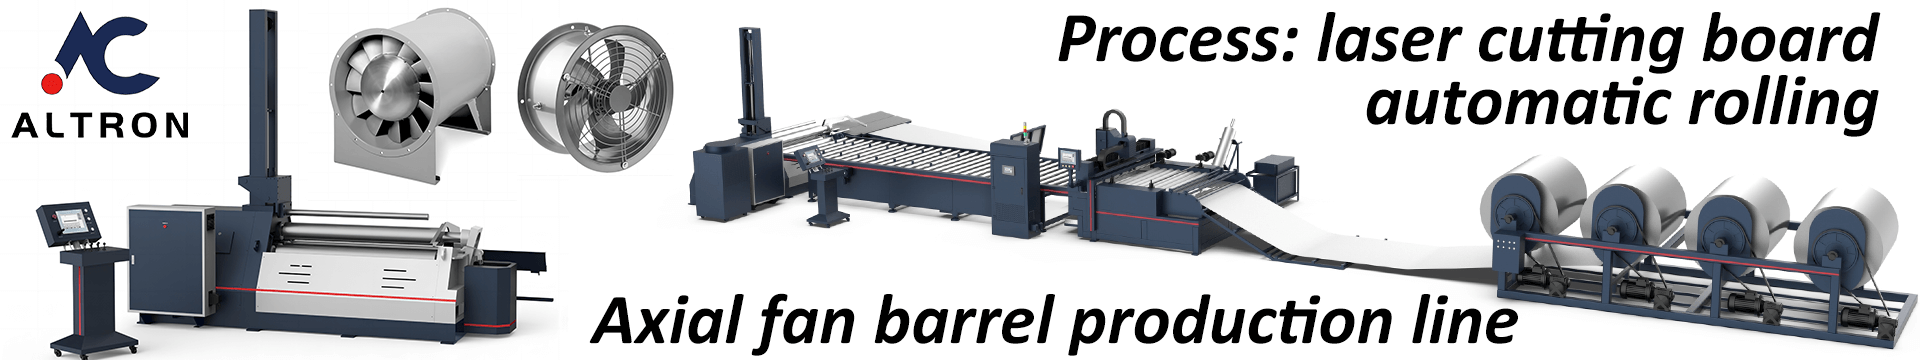 Axial fan barrel production line